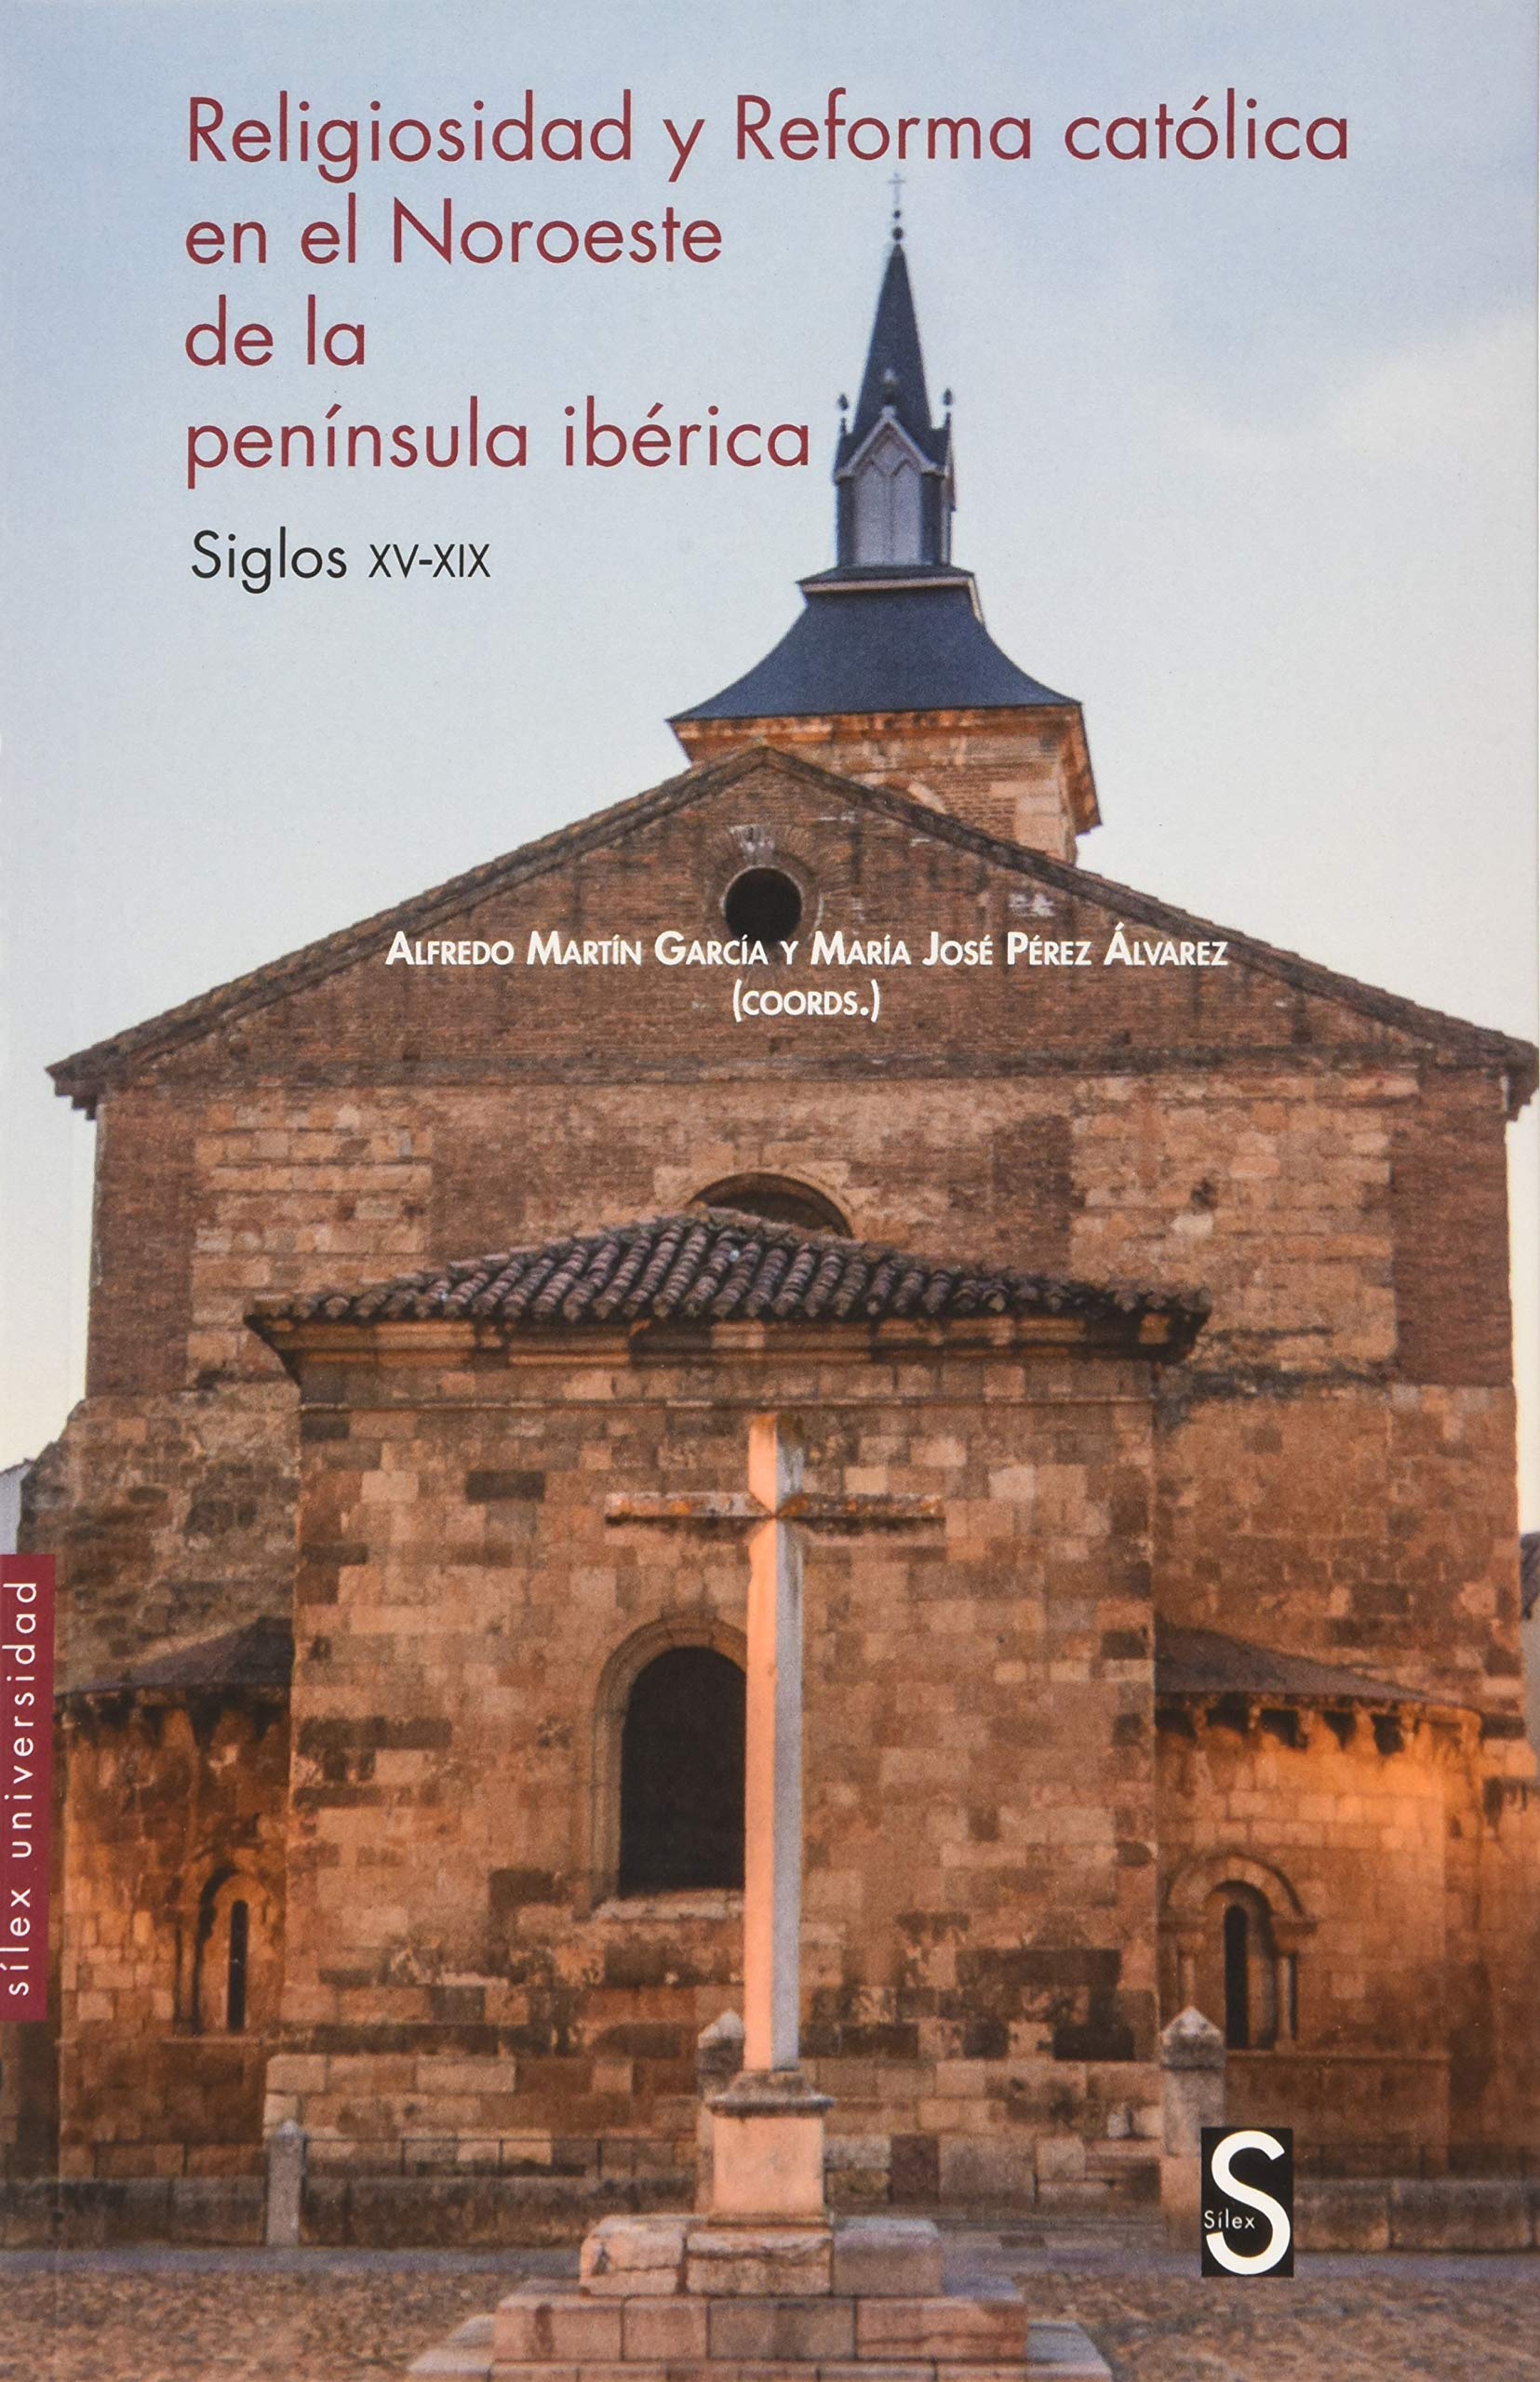 Imagen de portada del libro Religiosidad y Reforma católica en el noroeste de la península ibérica